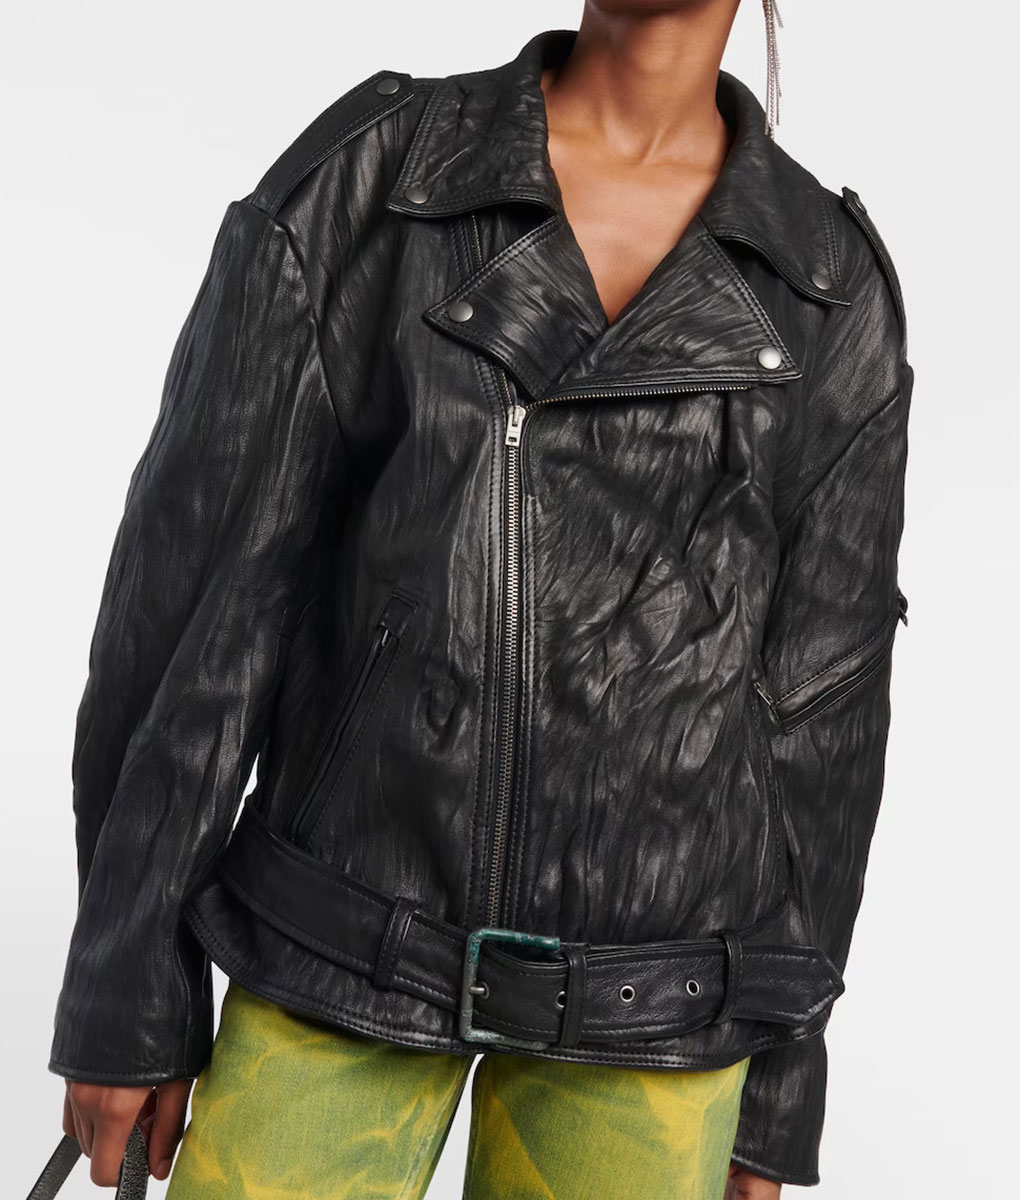 Megan Fox Coachella Black Leather Jacket (2)